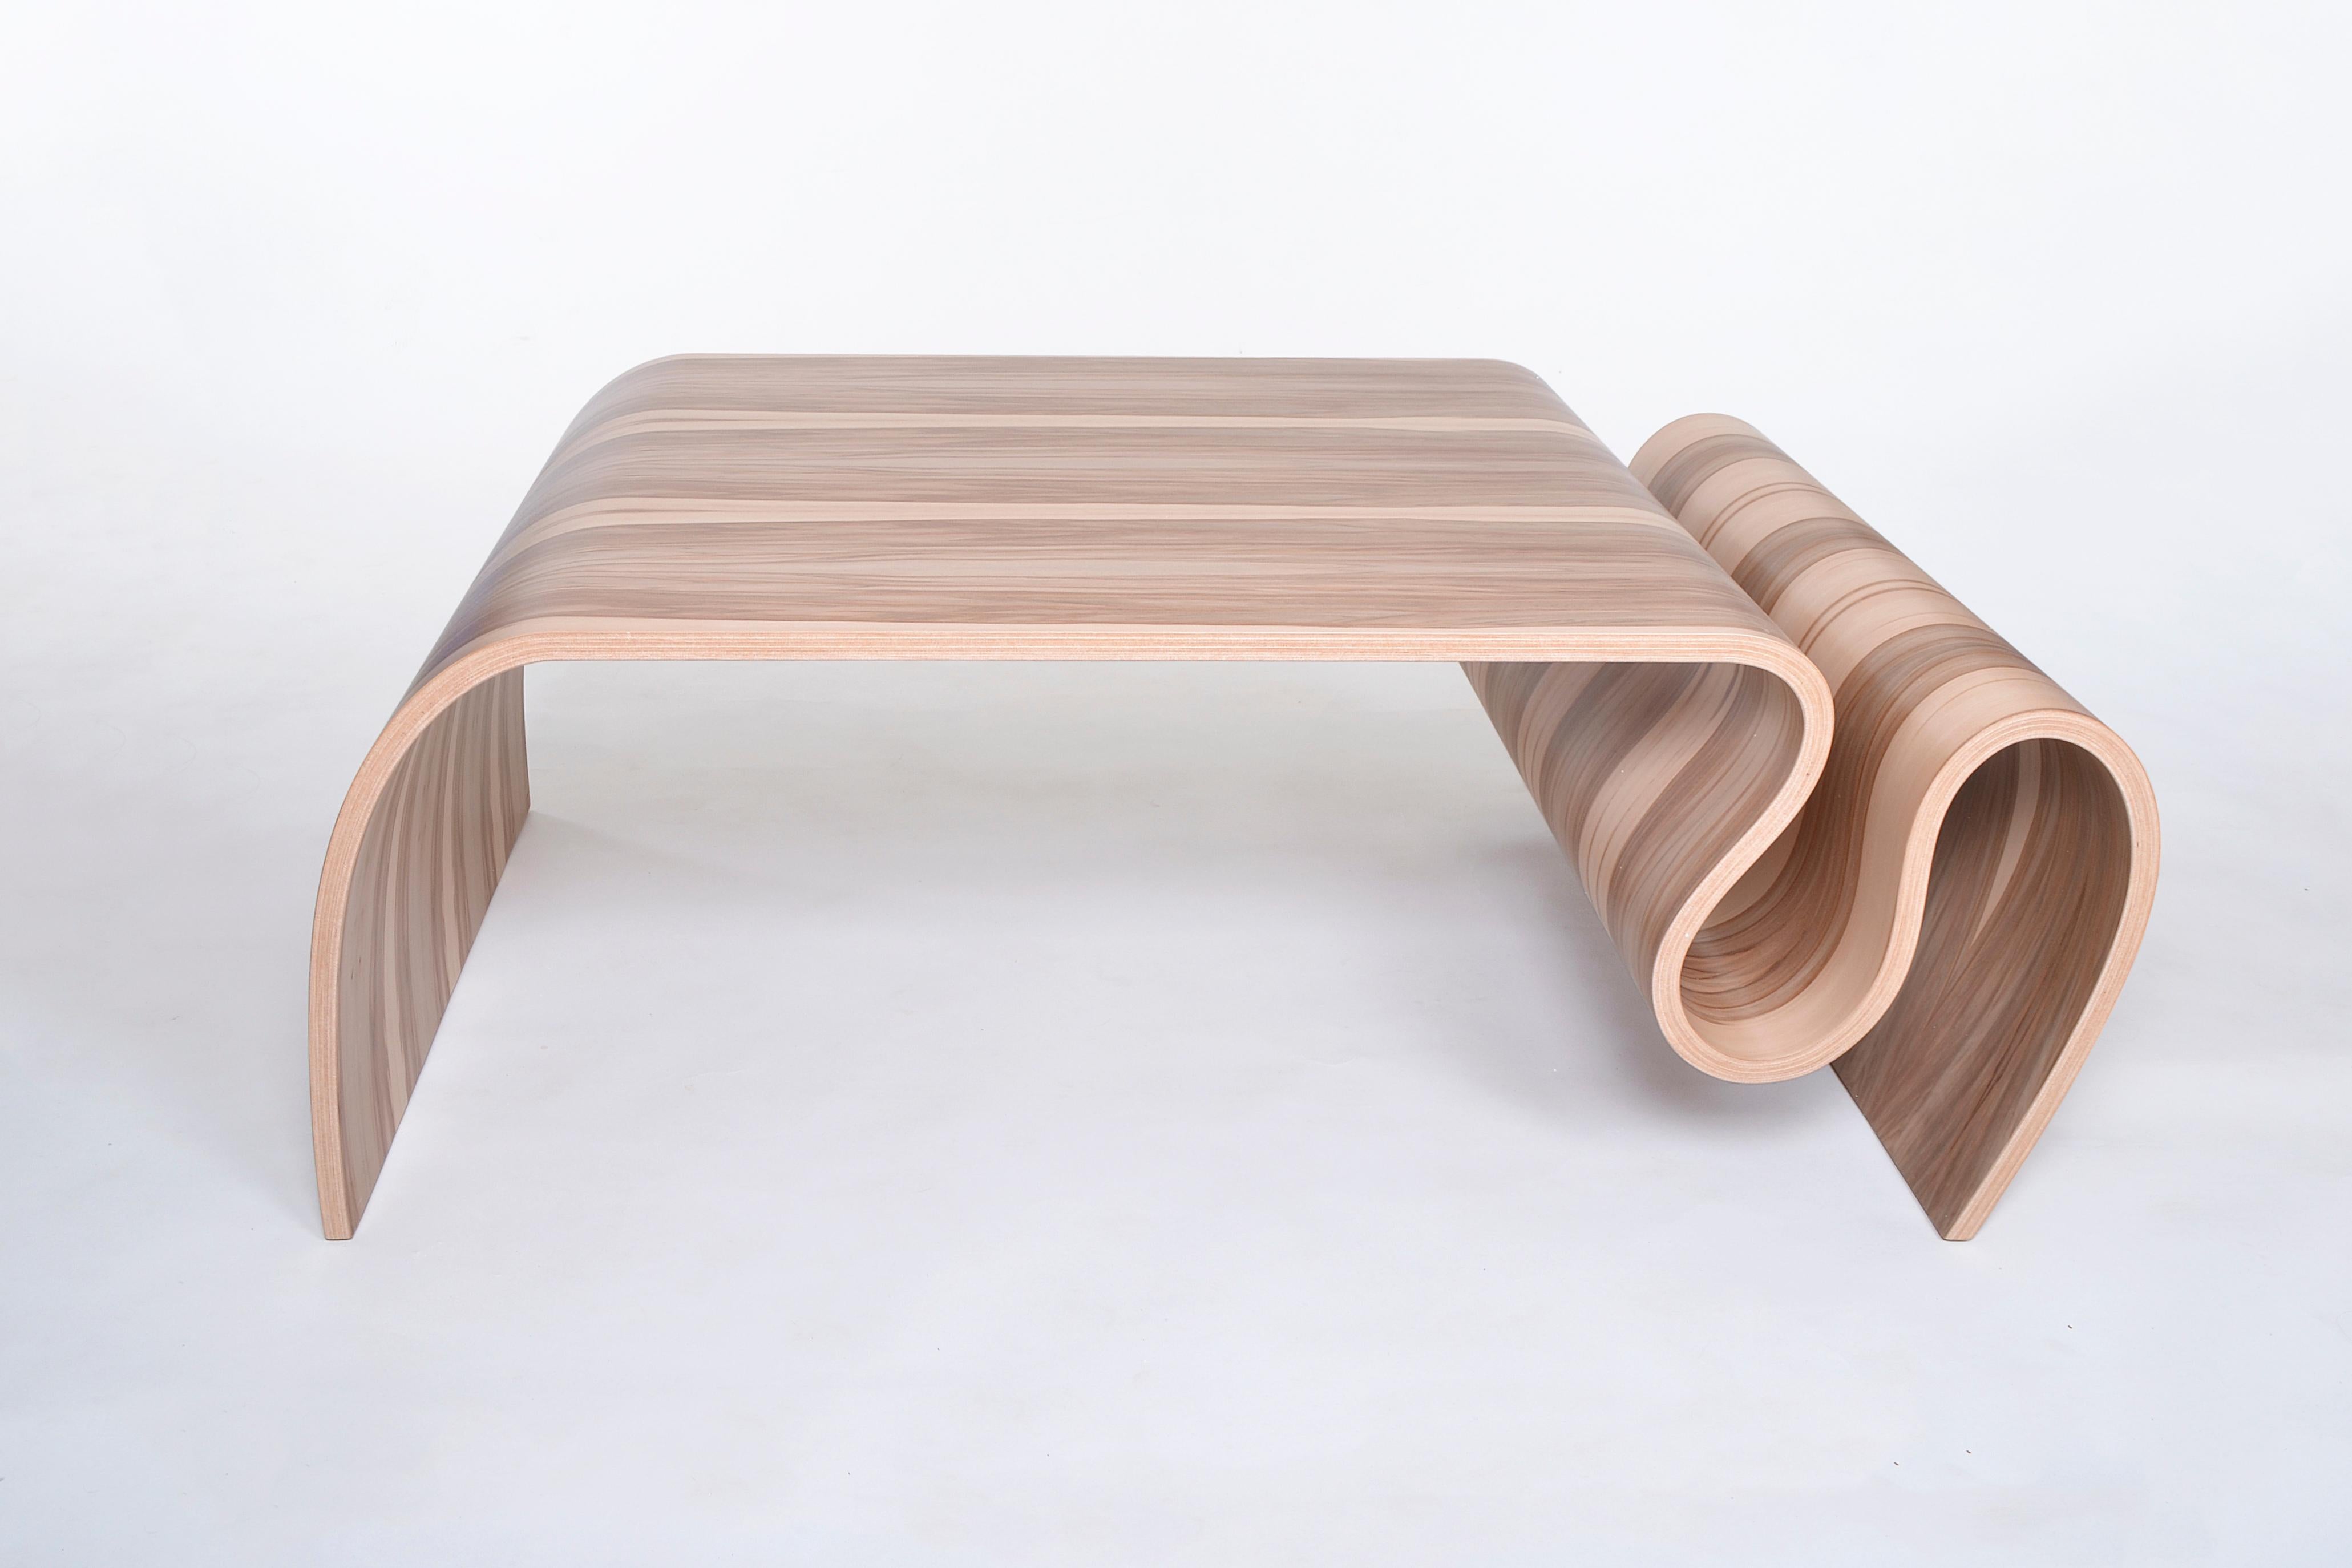 Das Design dieses Tisches ist sehr einzigartig und ungewöhnlich, es wäre ein großer Hauch von Modernität in Ihrem Haus Design.
Dieser Couchtisch ist aus laminiertem gebogenem Sperrholz und Sweet Gum Furnier gefertigt.
Gesamt e: 16